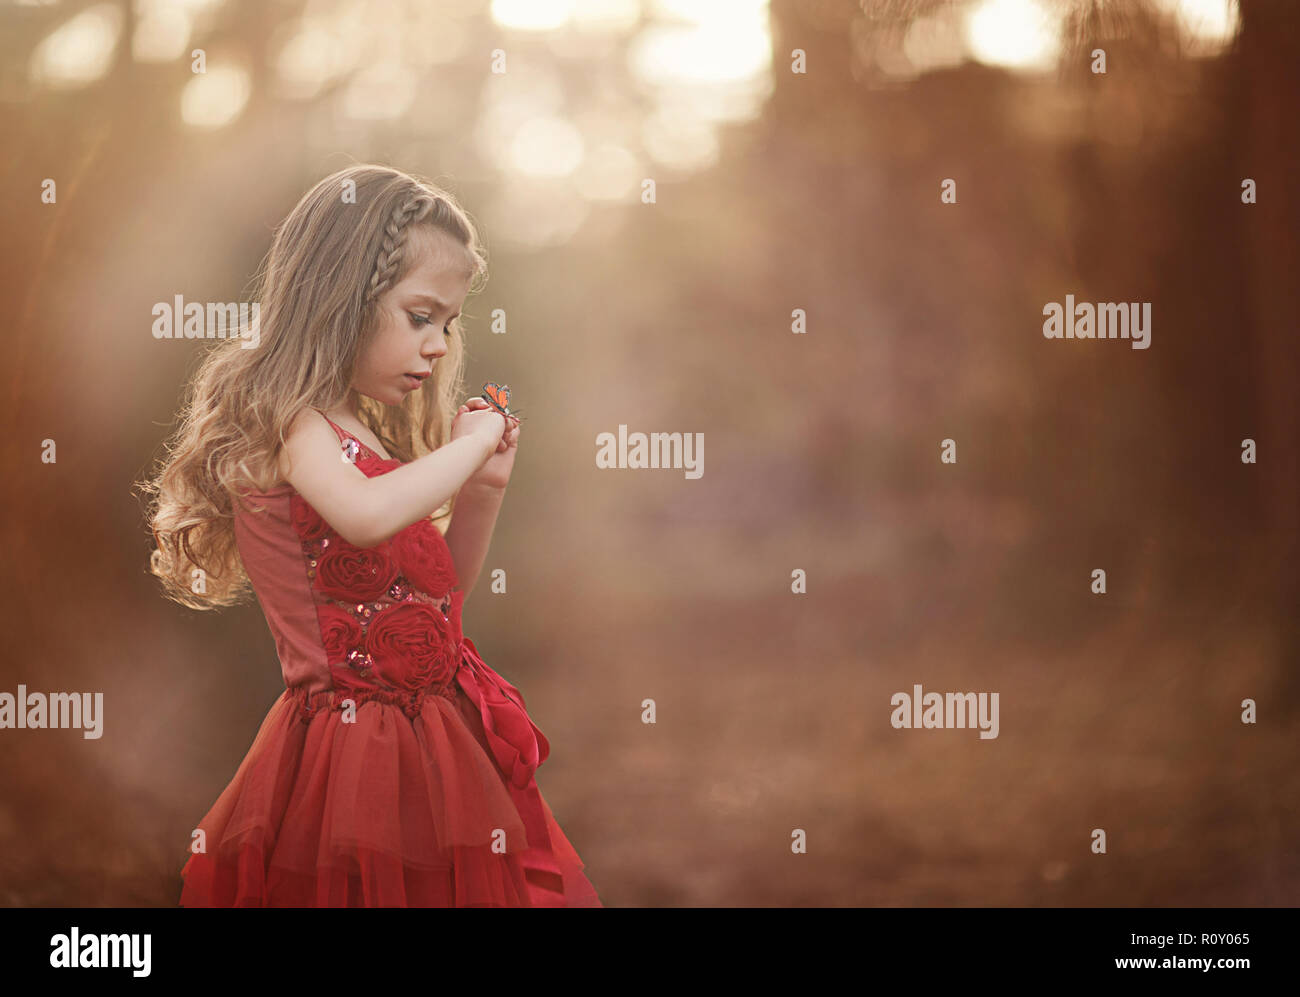 Giovane ragazza in un bel vestito rosso sta cercando in un timore reverenziale per una farfalla che ha atterrato sulla sua mano Foto Stock